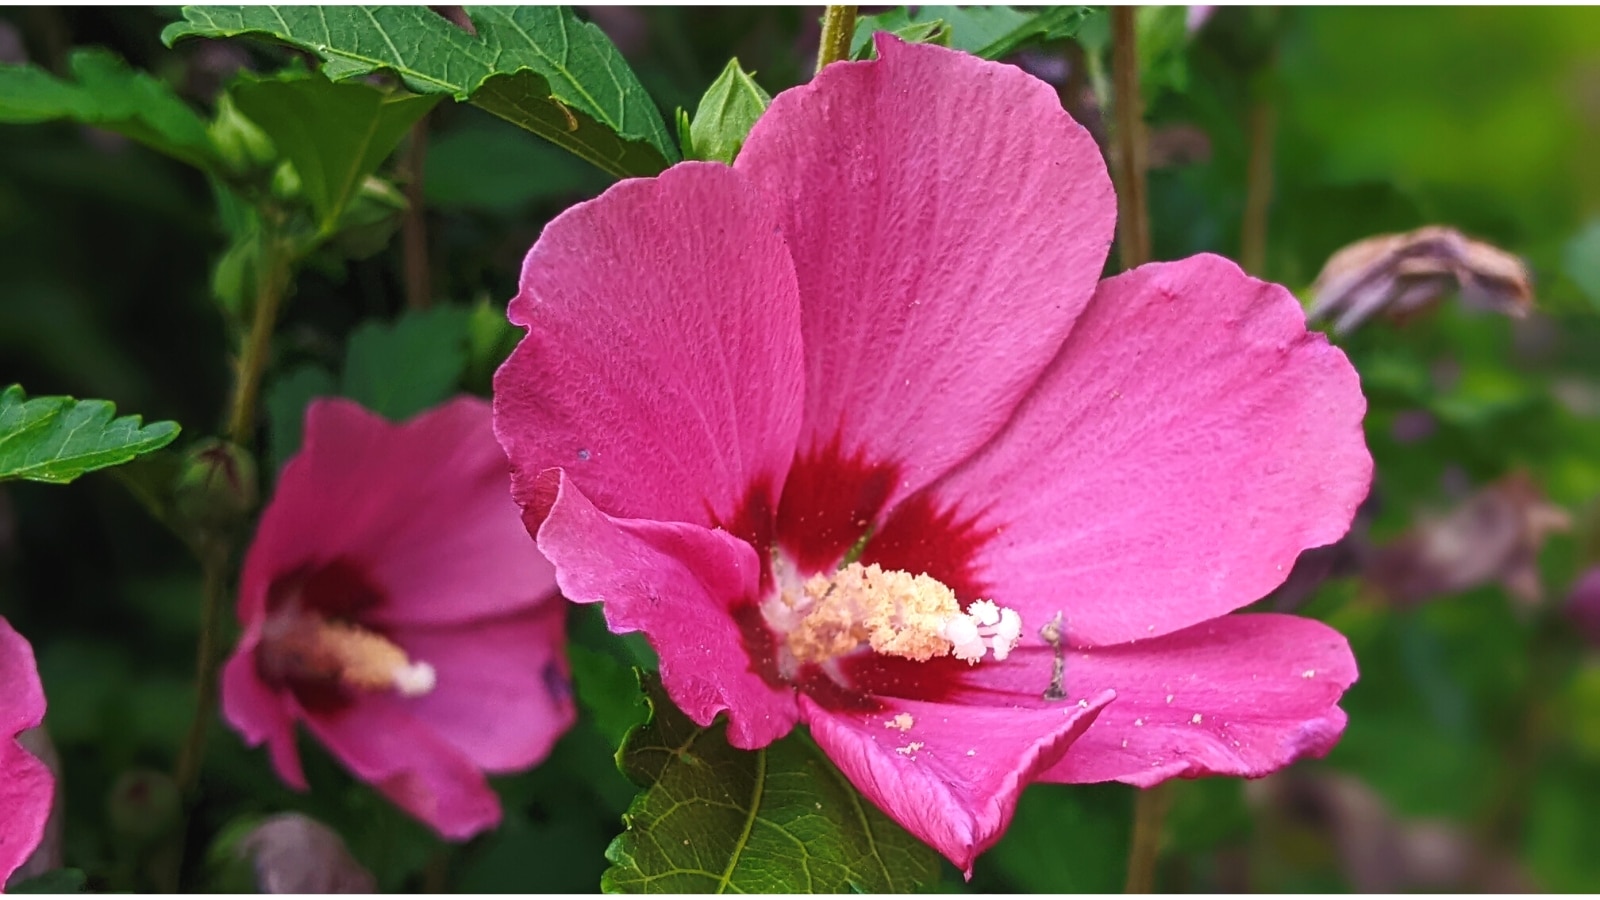 Primer plano de una flor rosa brillante con grandes pétalos ovalados que van del rosa al rojo en el centro.  En el centro de la flor hay un estambre largo, blanco y esponjoso.